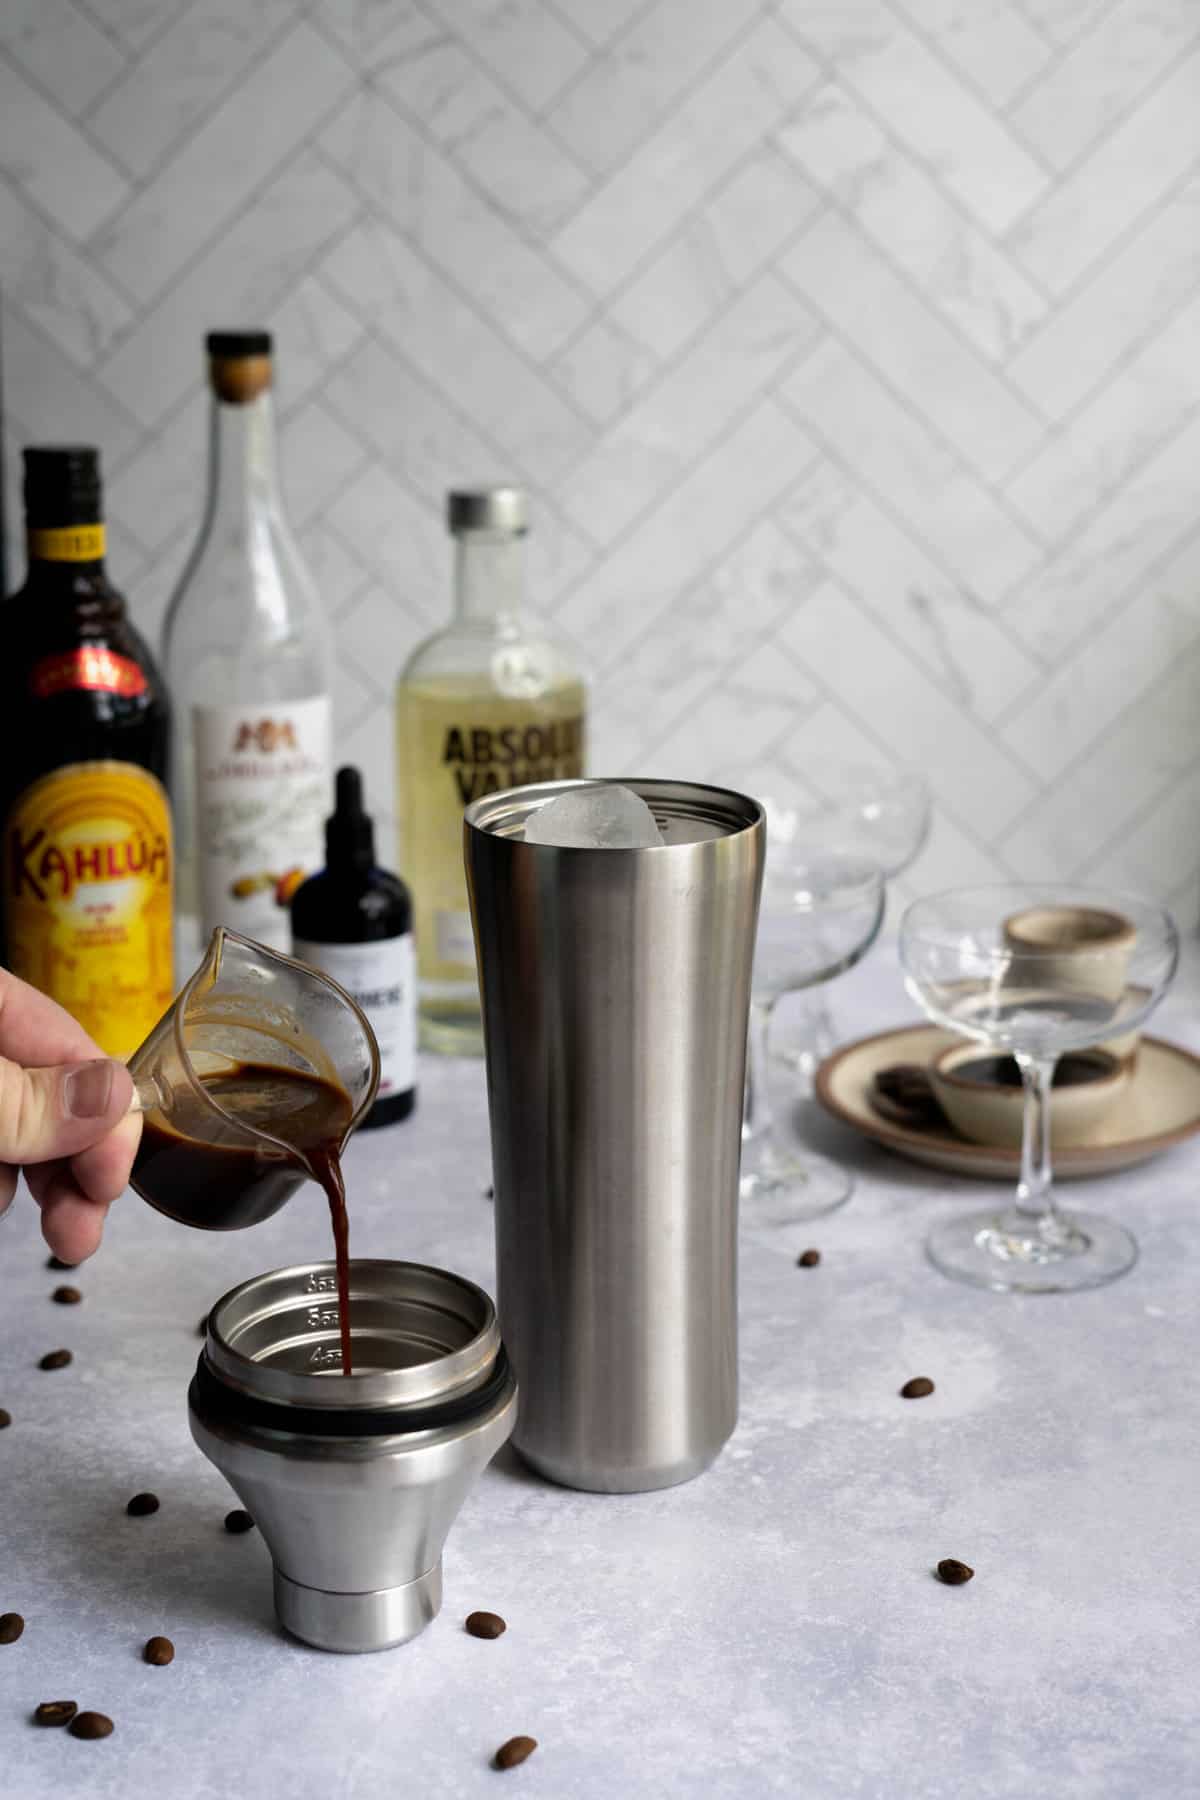 pouring espresso into a cocktail shaker to make a chocolate espresso martini.